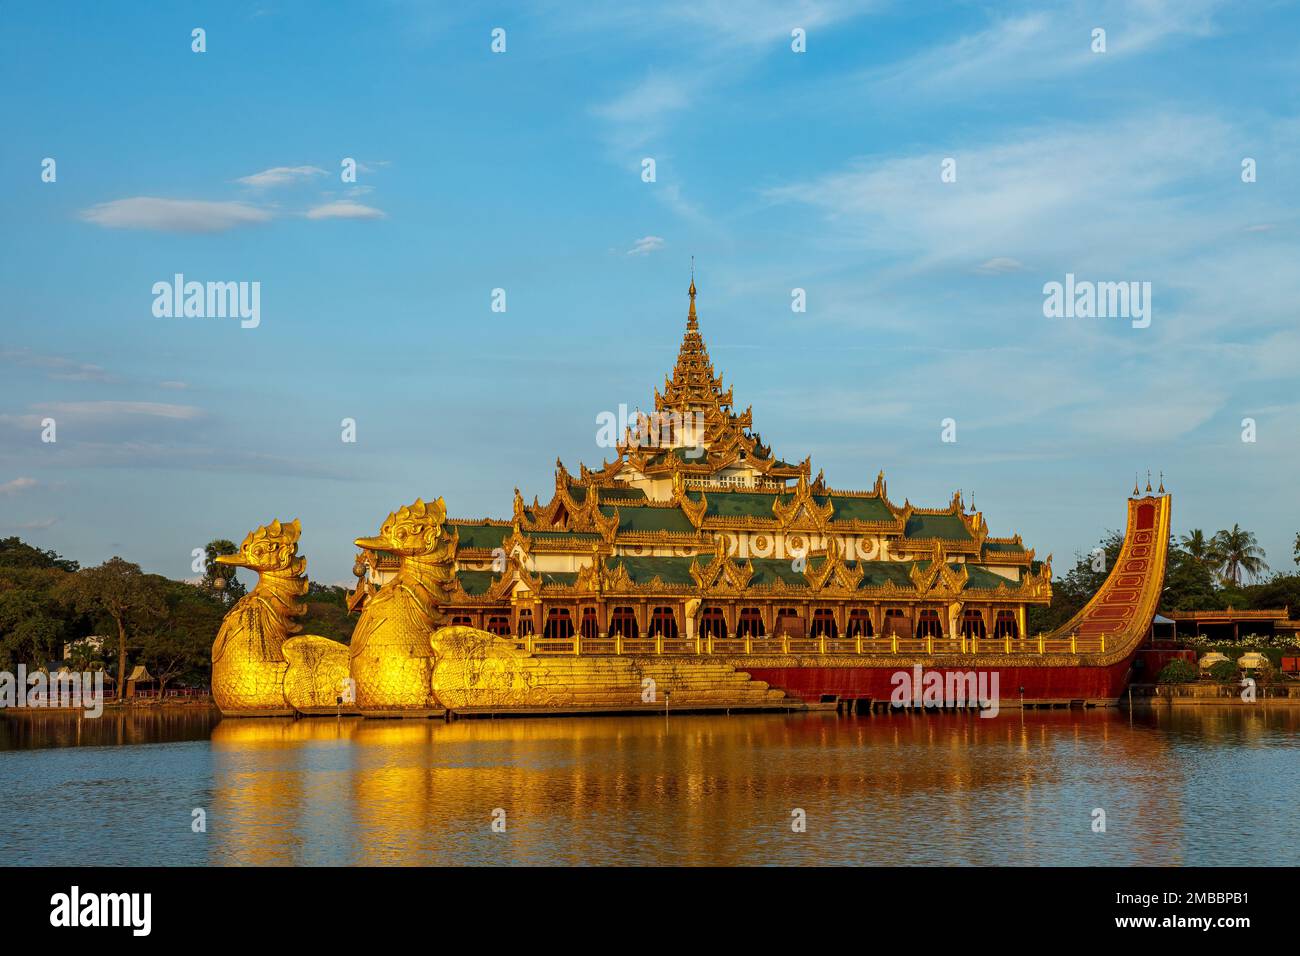 La barge royale de Rangoon Myanmar Banque D'Images